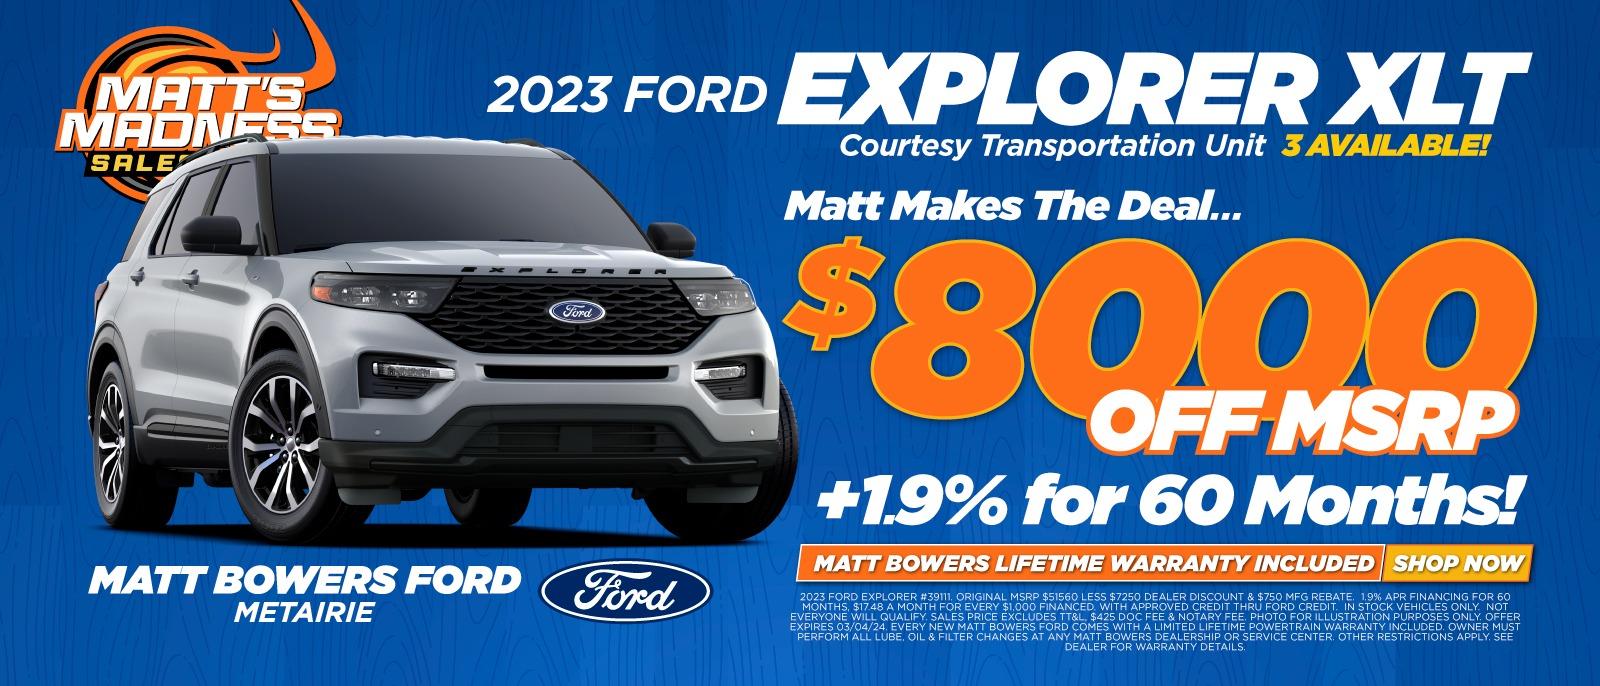 Matt Bowers Ford Explorer Deals